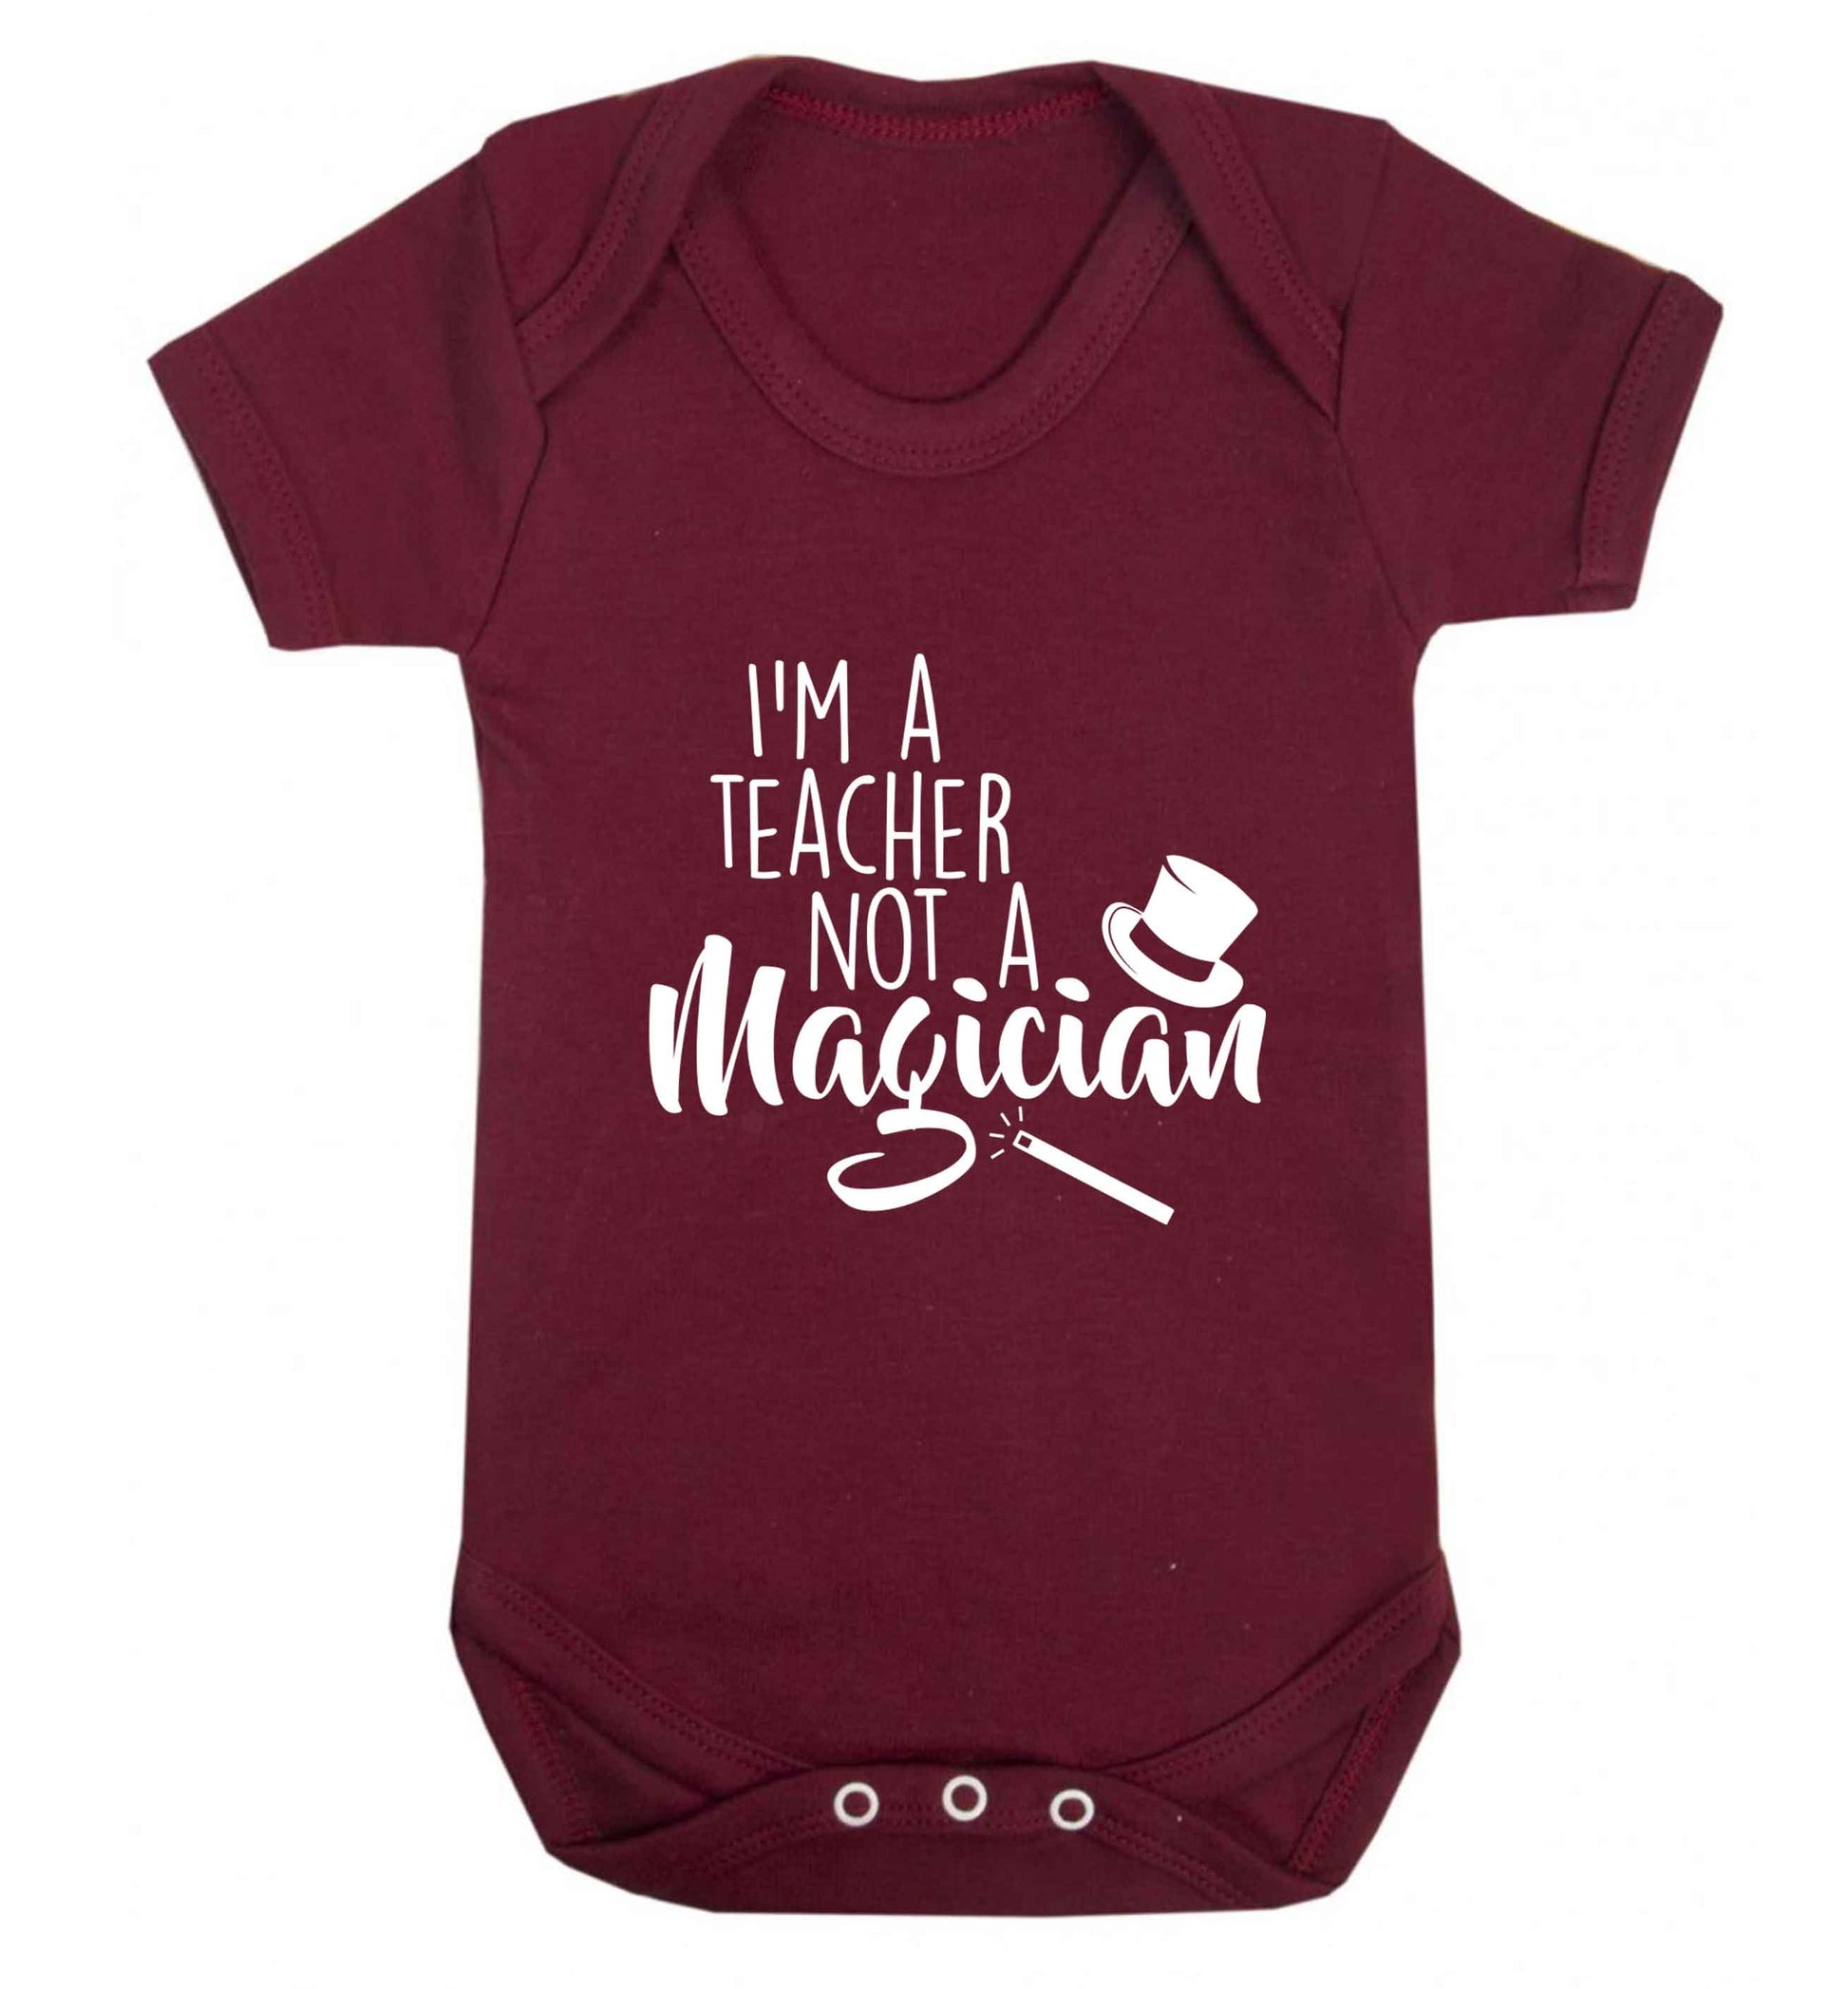 I'm a teacher not a magician baby vest maroon 18-24 months